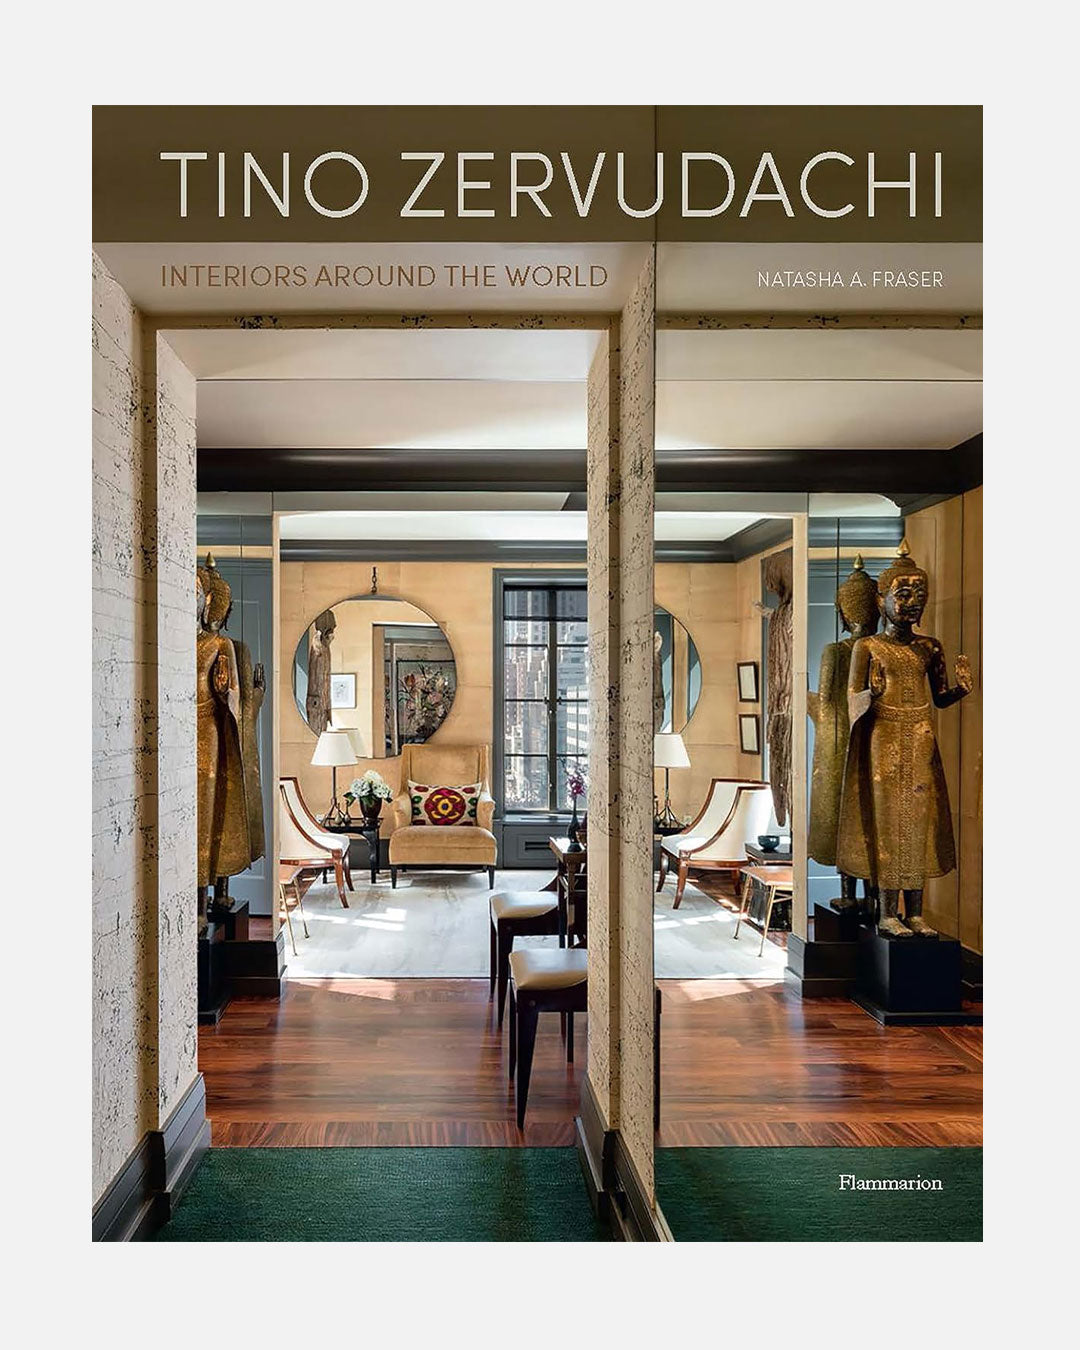 Tino Zervudachi: Interiors Around the World by Natasha Fraser